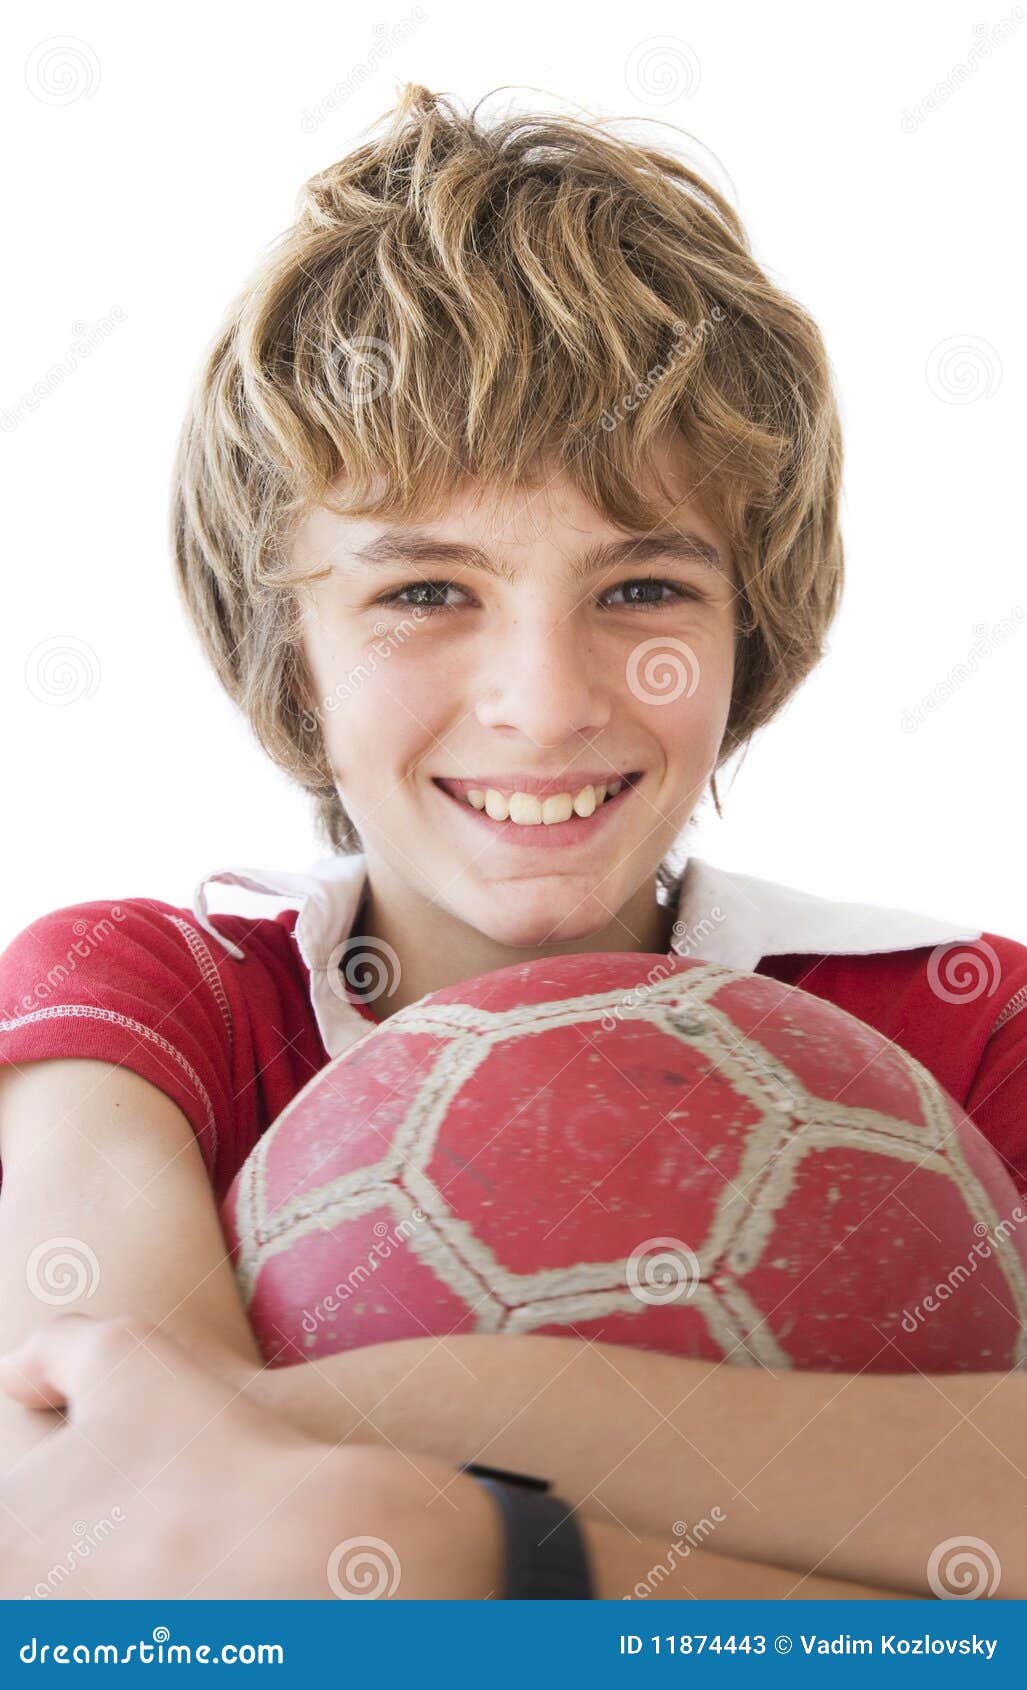 De jongen van het voetbal stock afbeelding. Image of knap - 11874443